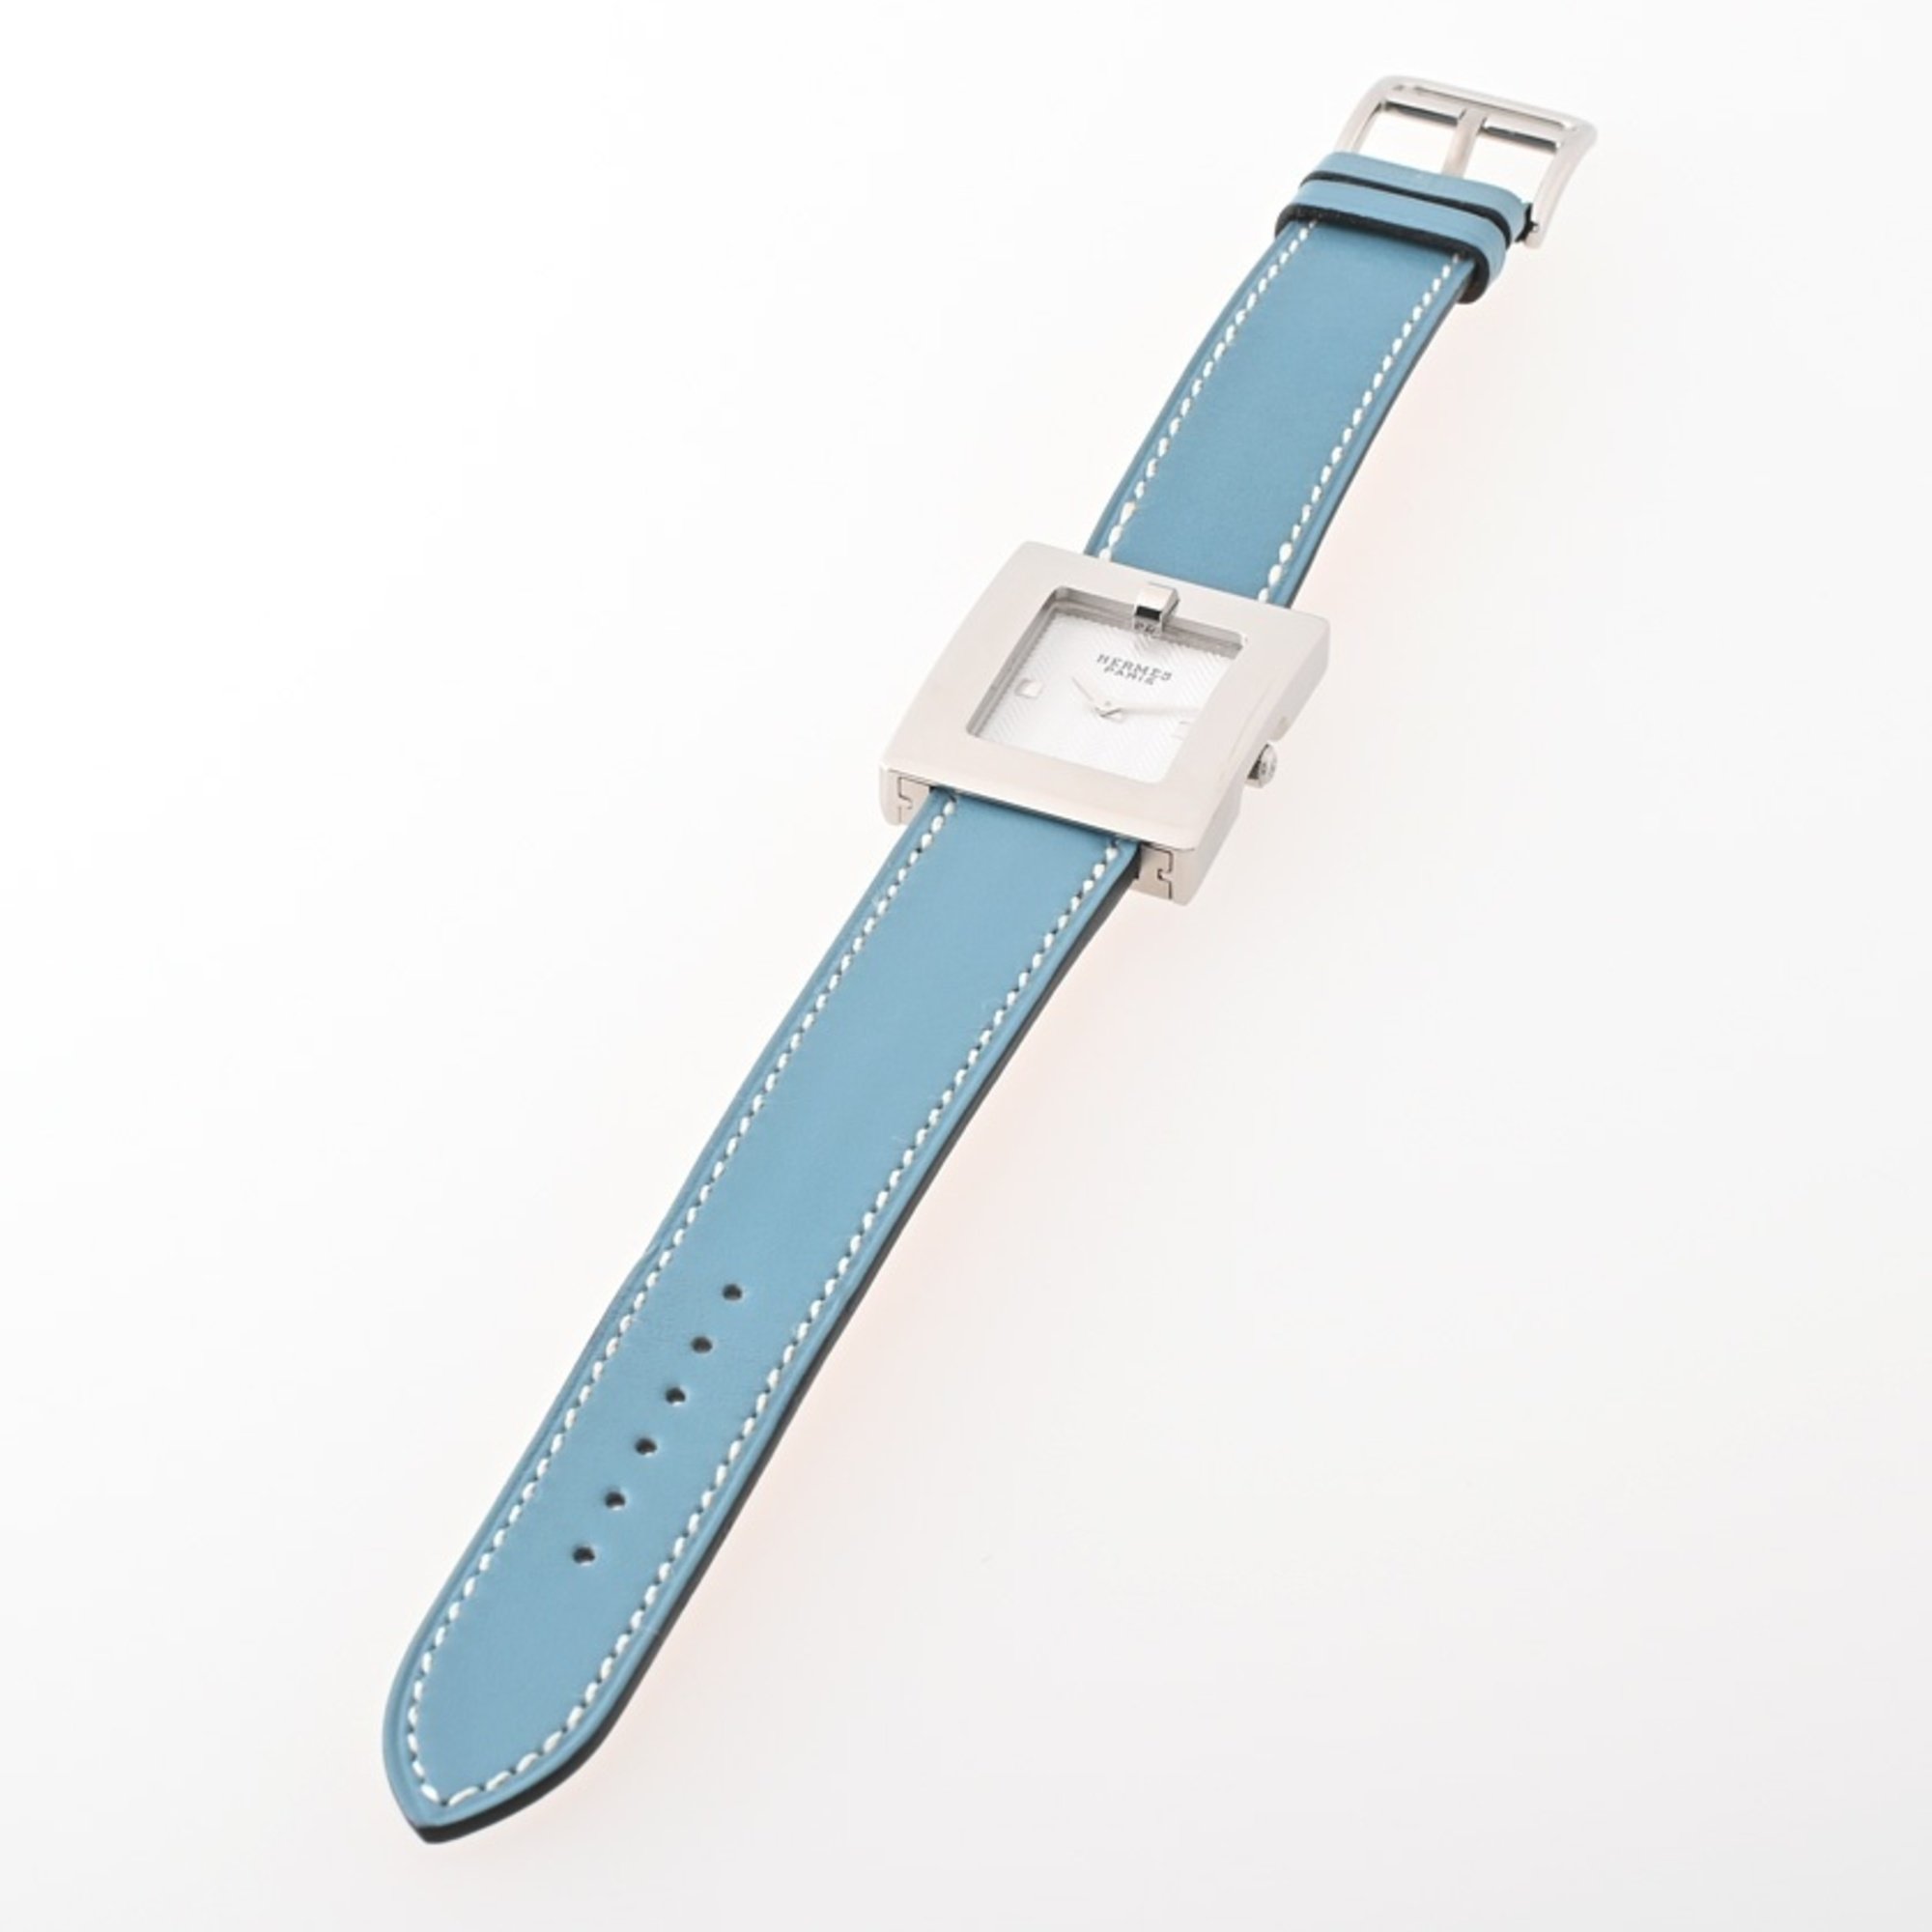 HERMES Belt Watch BE2.210.160 G-GJ Quartz Wristwatch A-155481